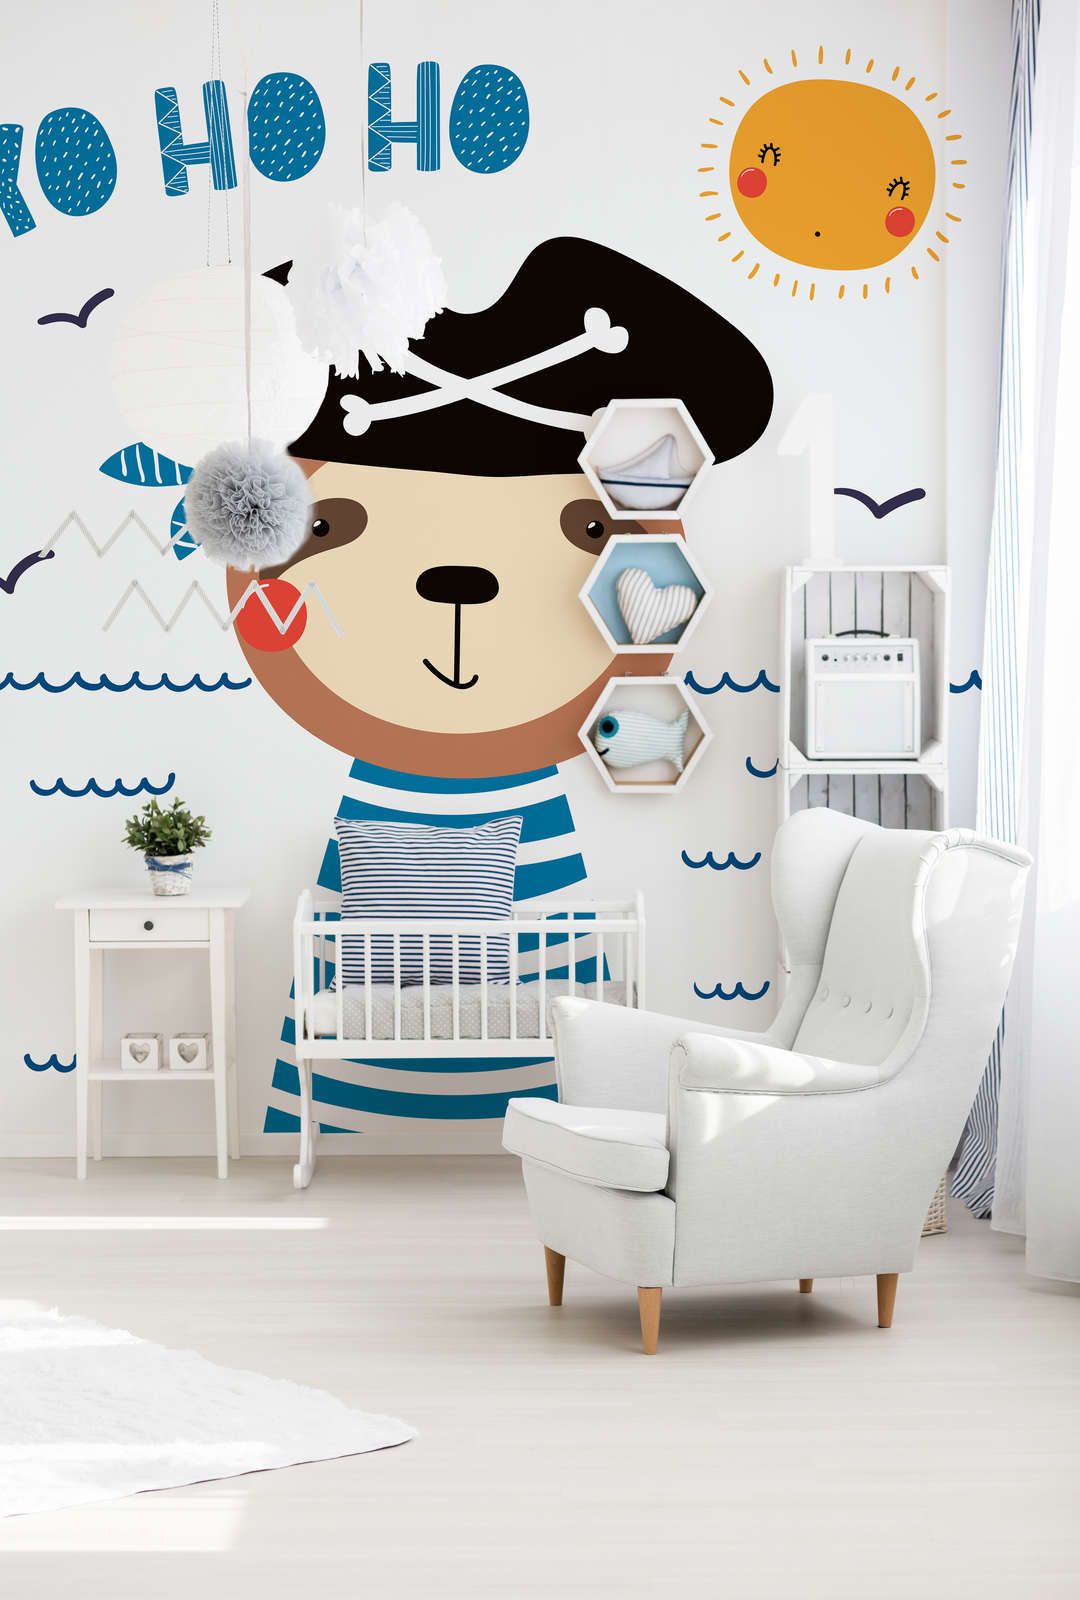             Papel pintado con foto de oso pirata para habitación infantil - Material sin tejer liso y ligeramente brillante
        